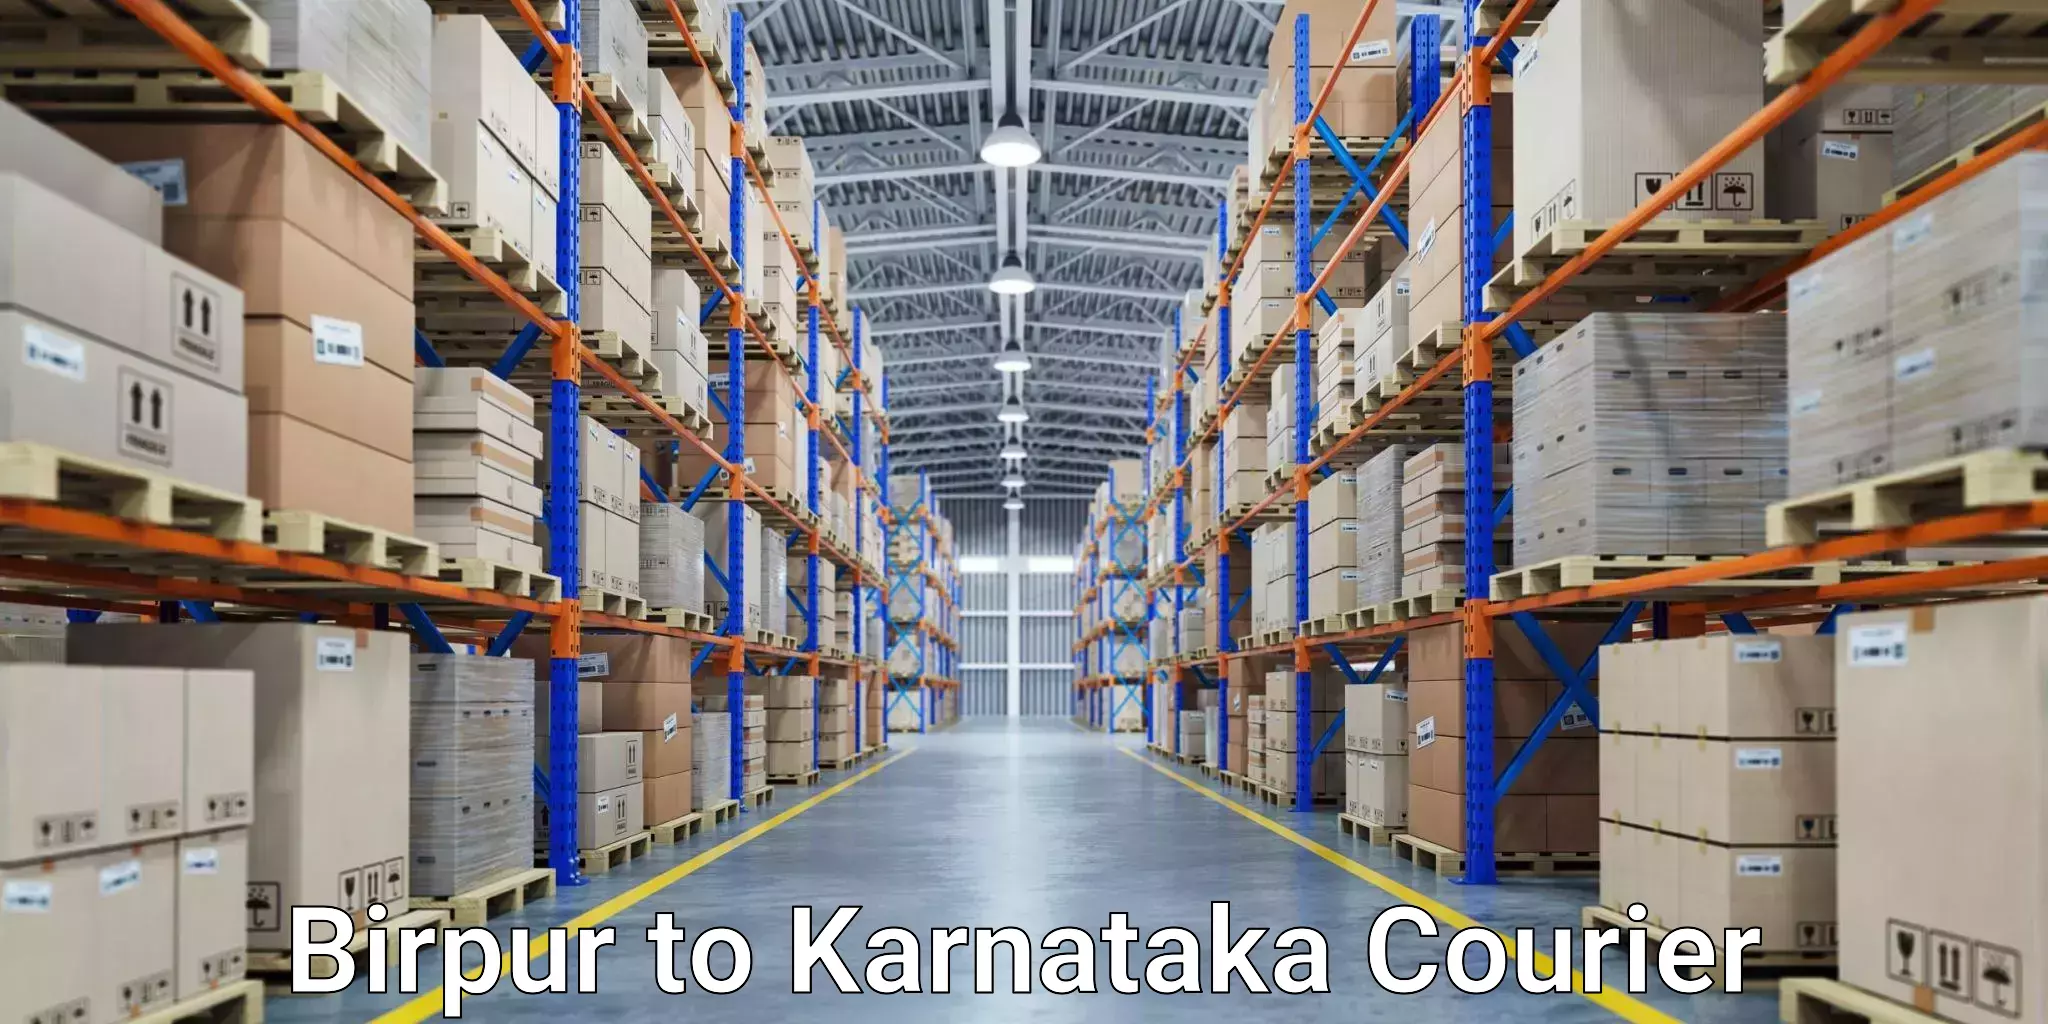 On-demand shipping options Birpur to Karnataka